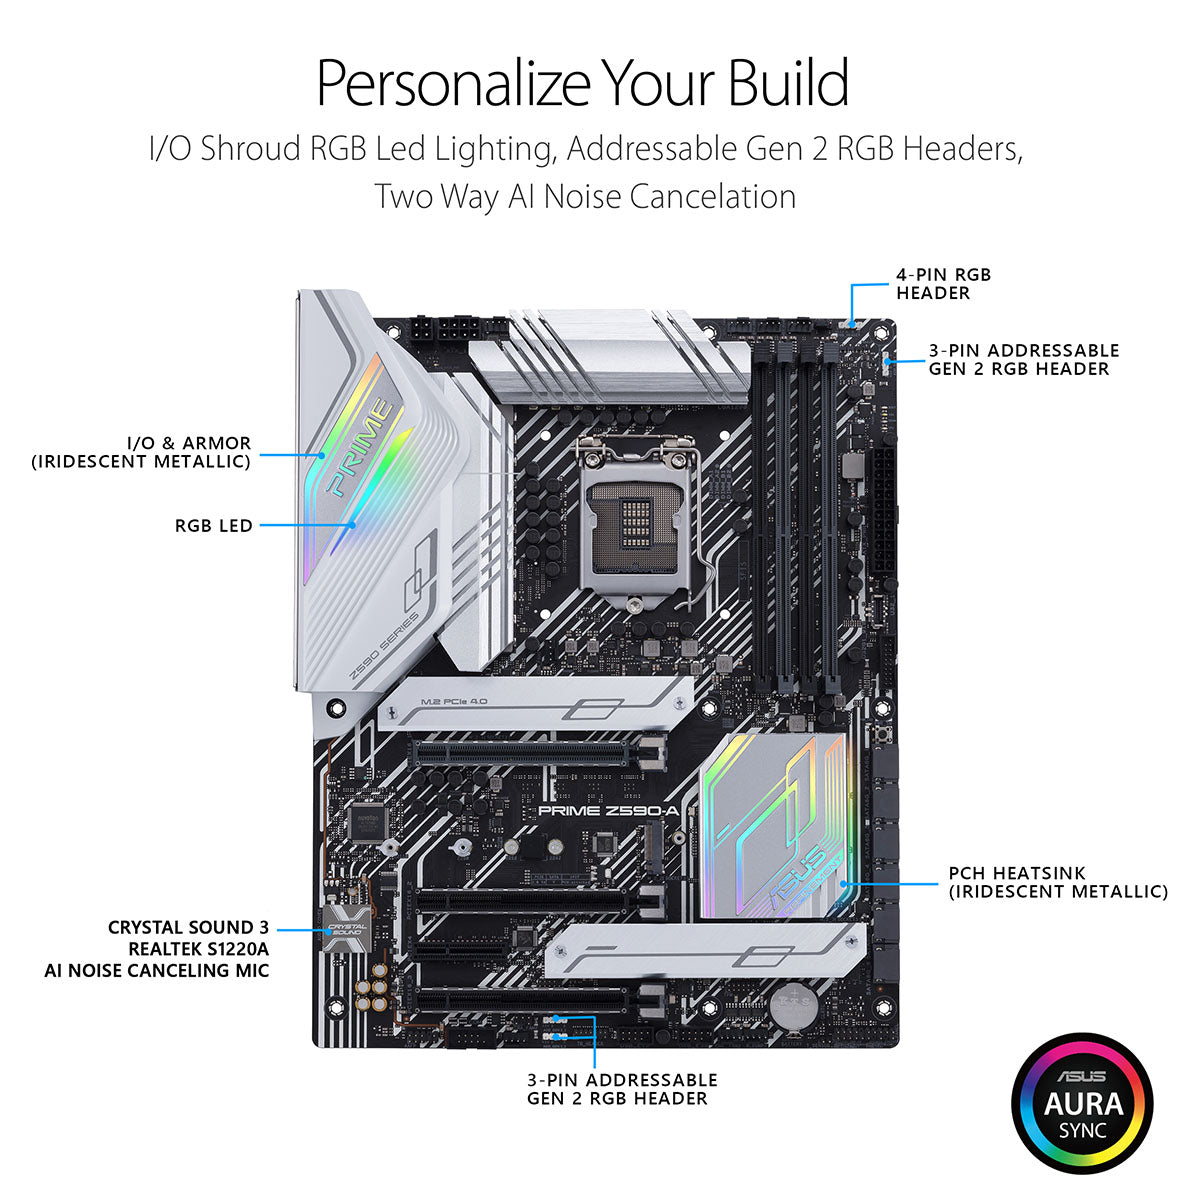 Asus Prime Z590-A ATX LGA 1200 मदरबोर्ड थंडरबोल्ट 4 और AI इंटेलिजेंट सॉफ्टवेयर के साथ